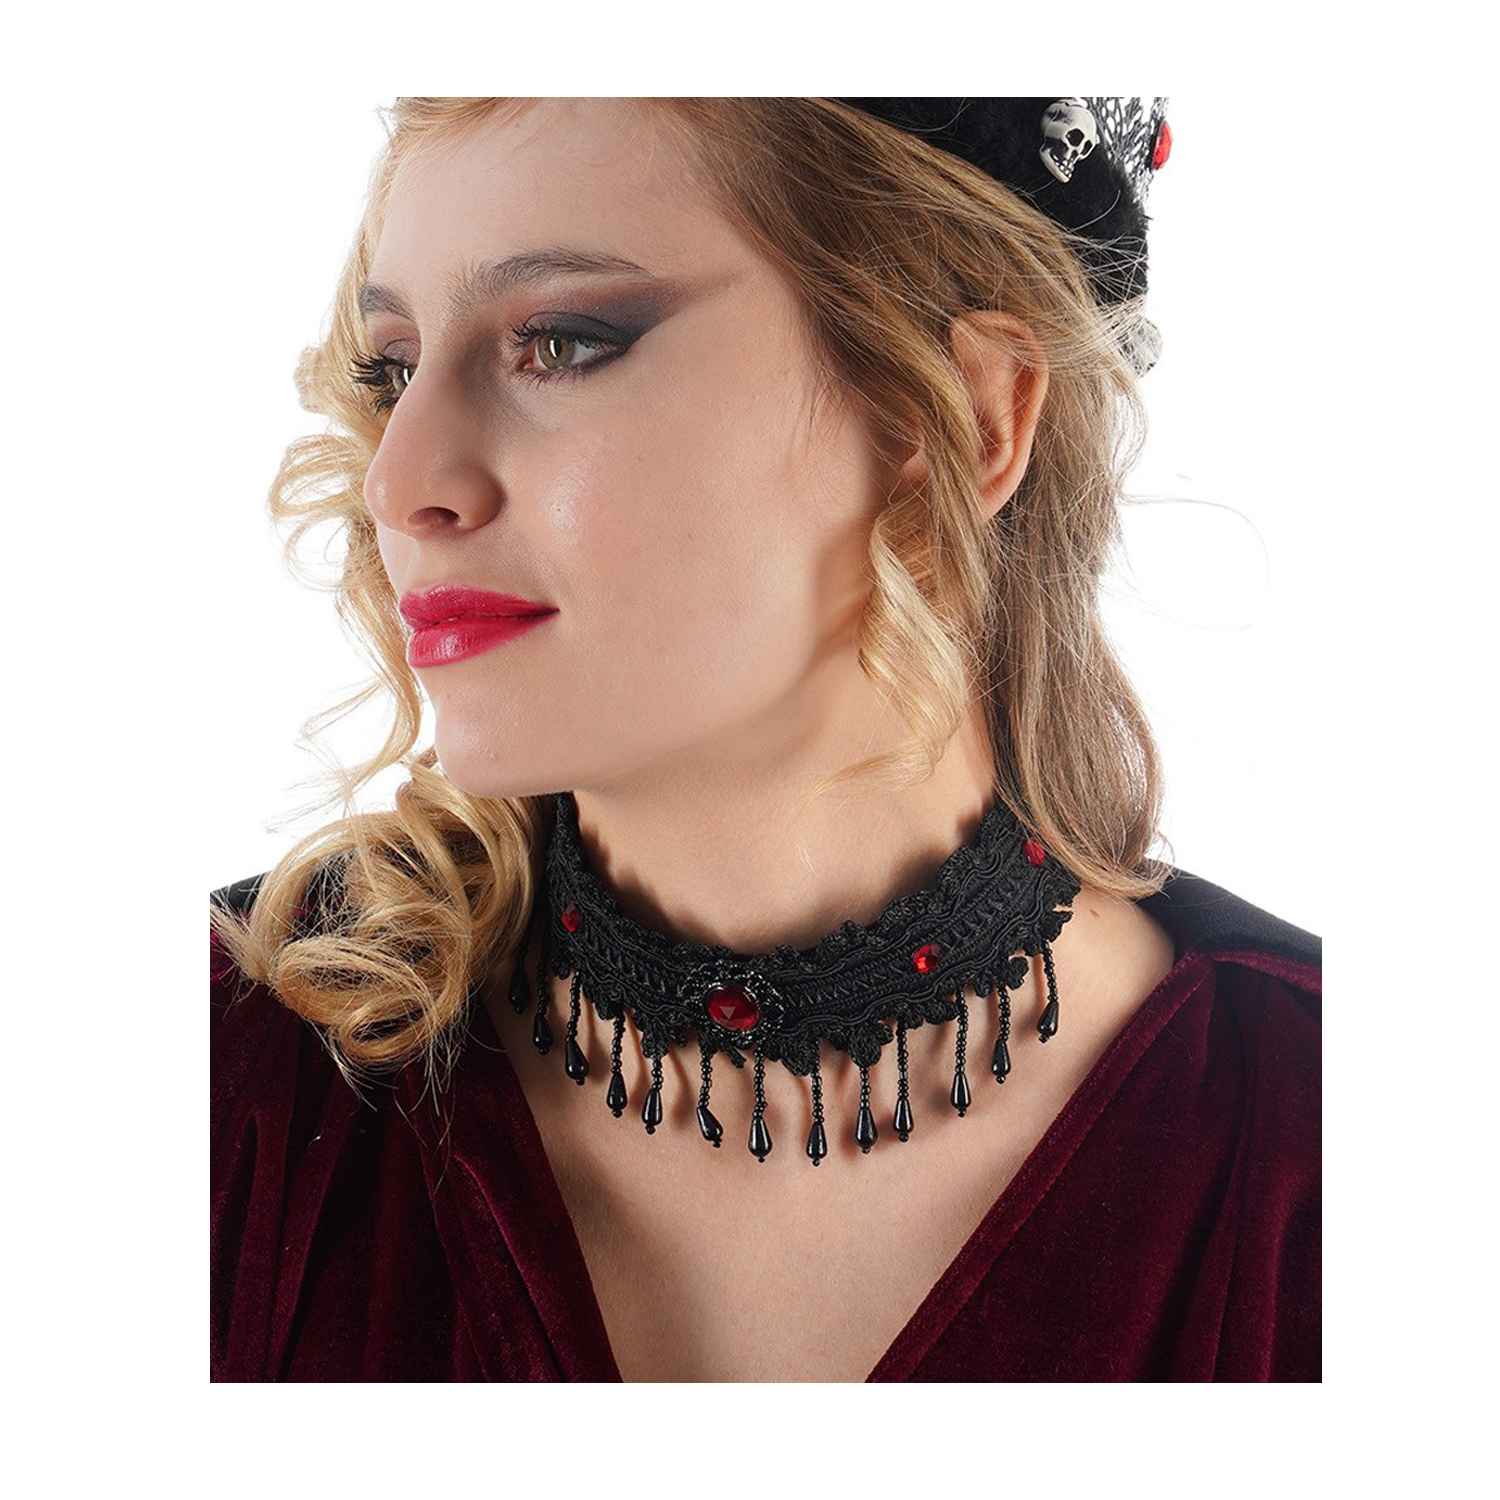 NEU Halsband im Gothic- / Halloween-Look, Schwarz mit roten Steinen Bild 2